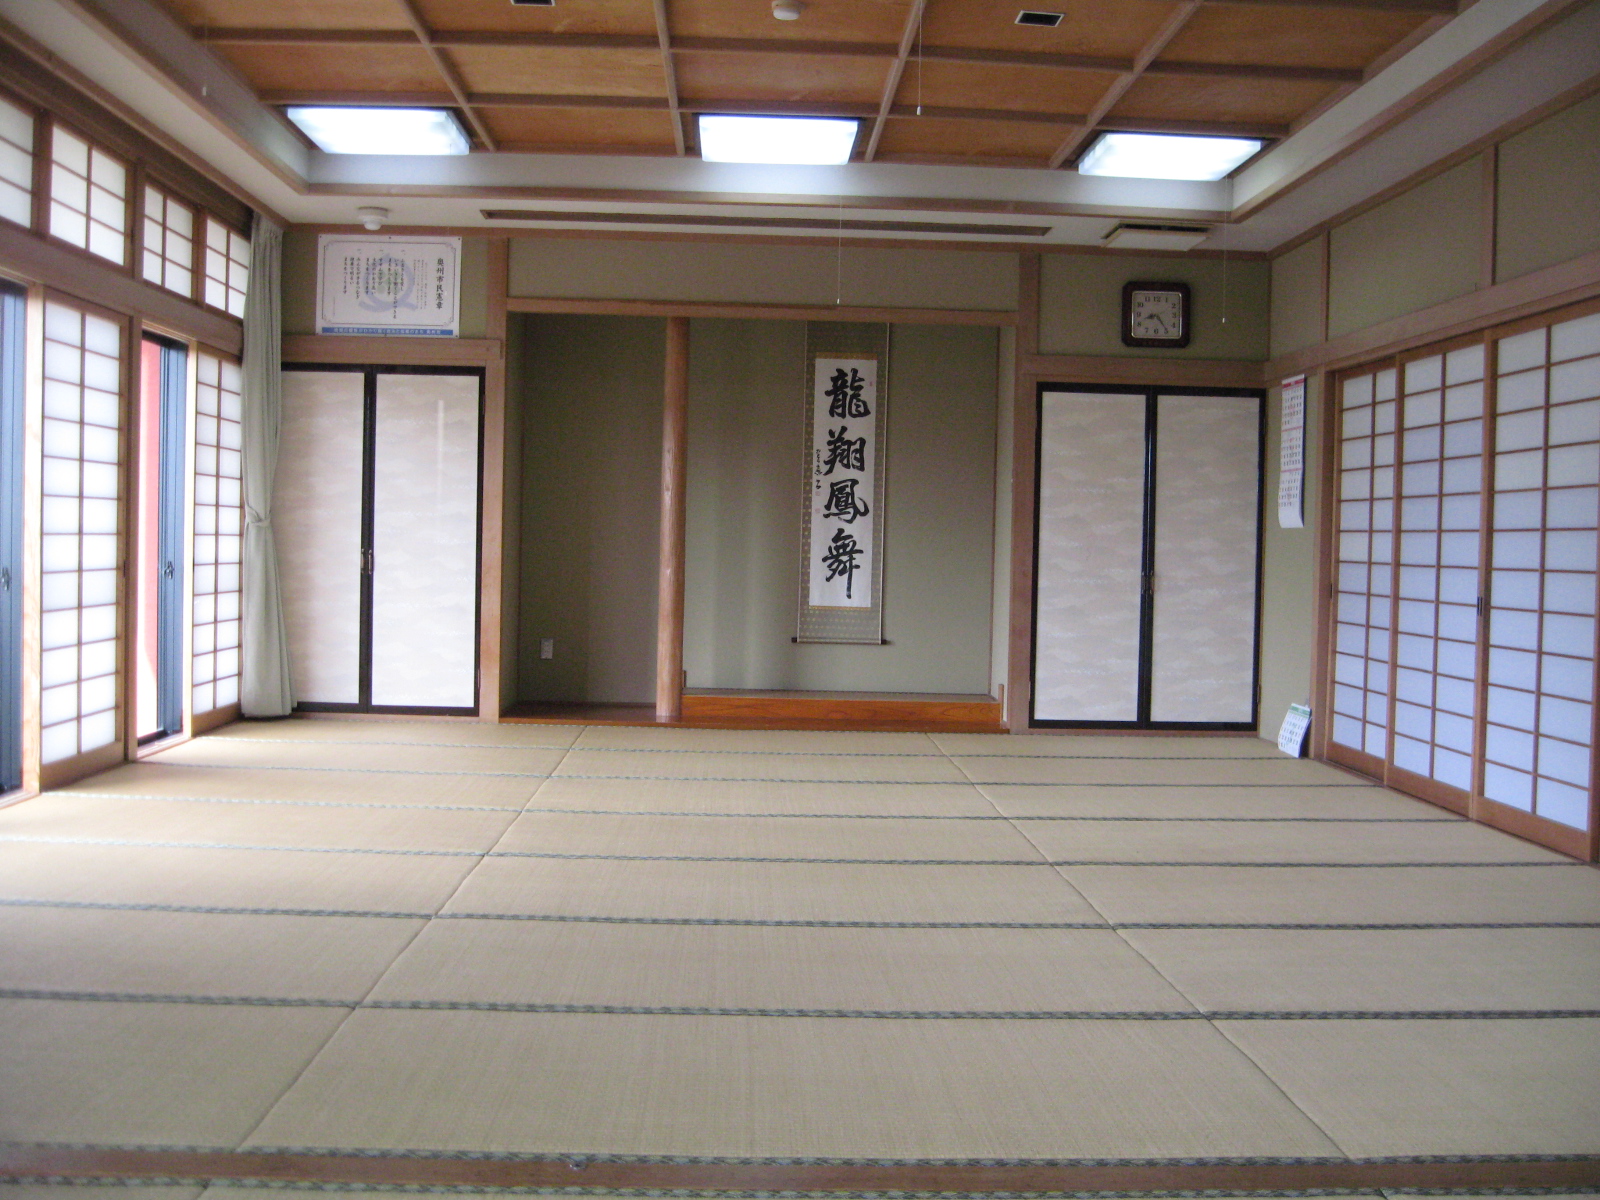 「龍翔鳳舞」と書かれた掛け軸が飾られている、畳が敷かれた和室の写真